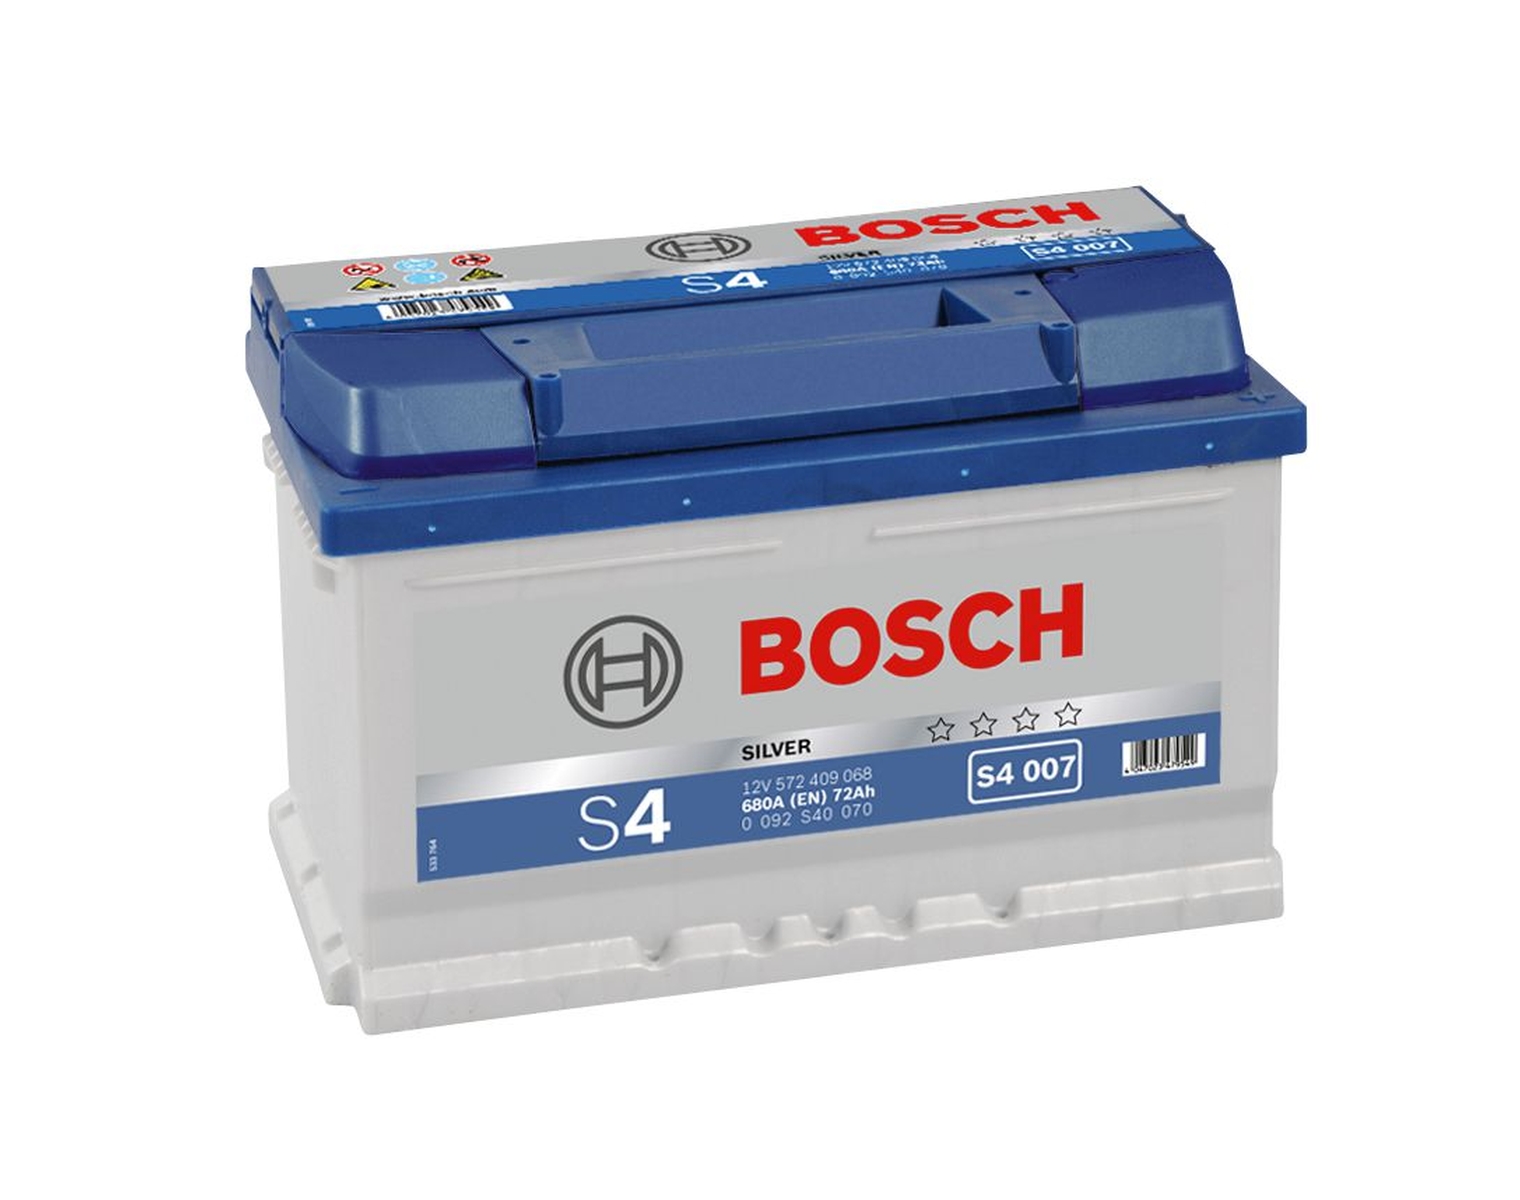 Bosch Starter-Batterie 12V 572 409 068 72Ah, S4 007 T6